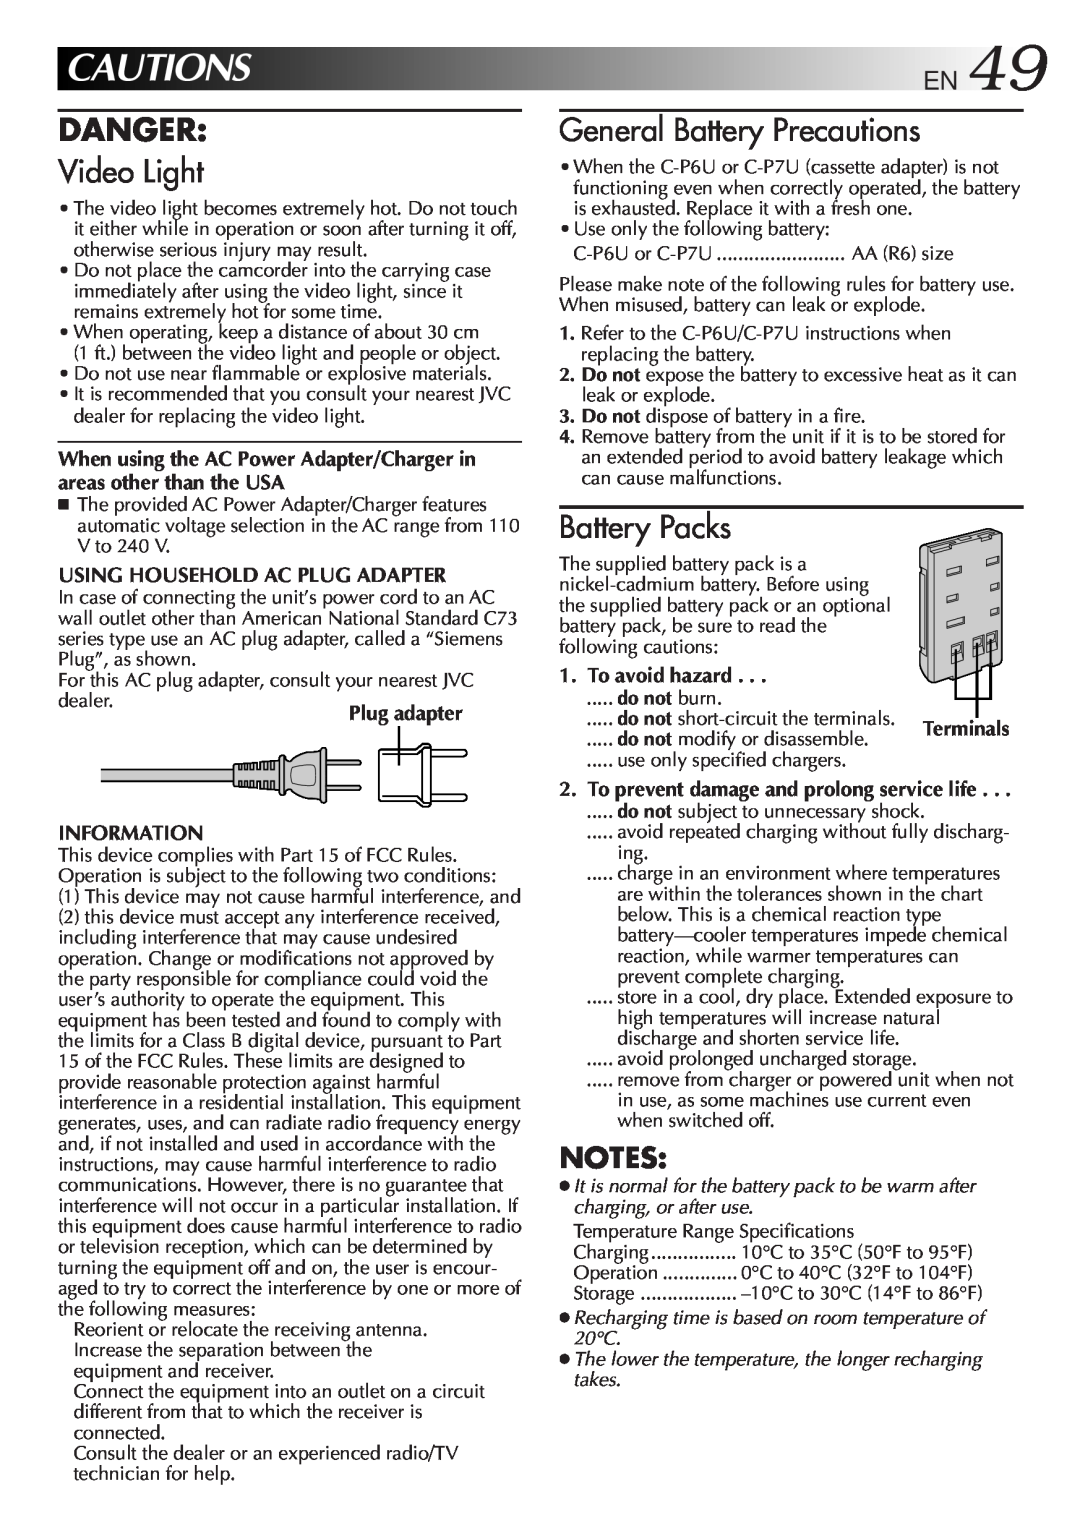 JVC GR-AXM100 manual CAUTIONSEN49, Danger, Video Light, General Battery Precautions, Battery Packs 